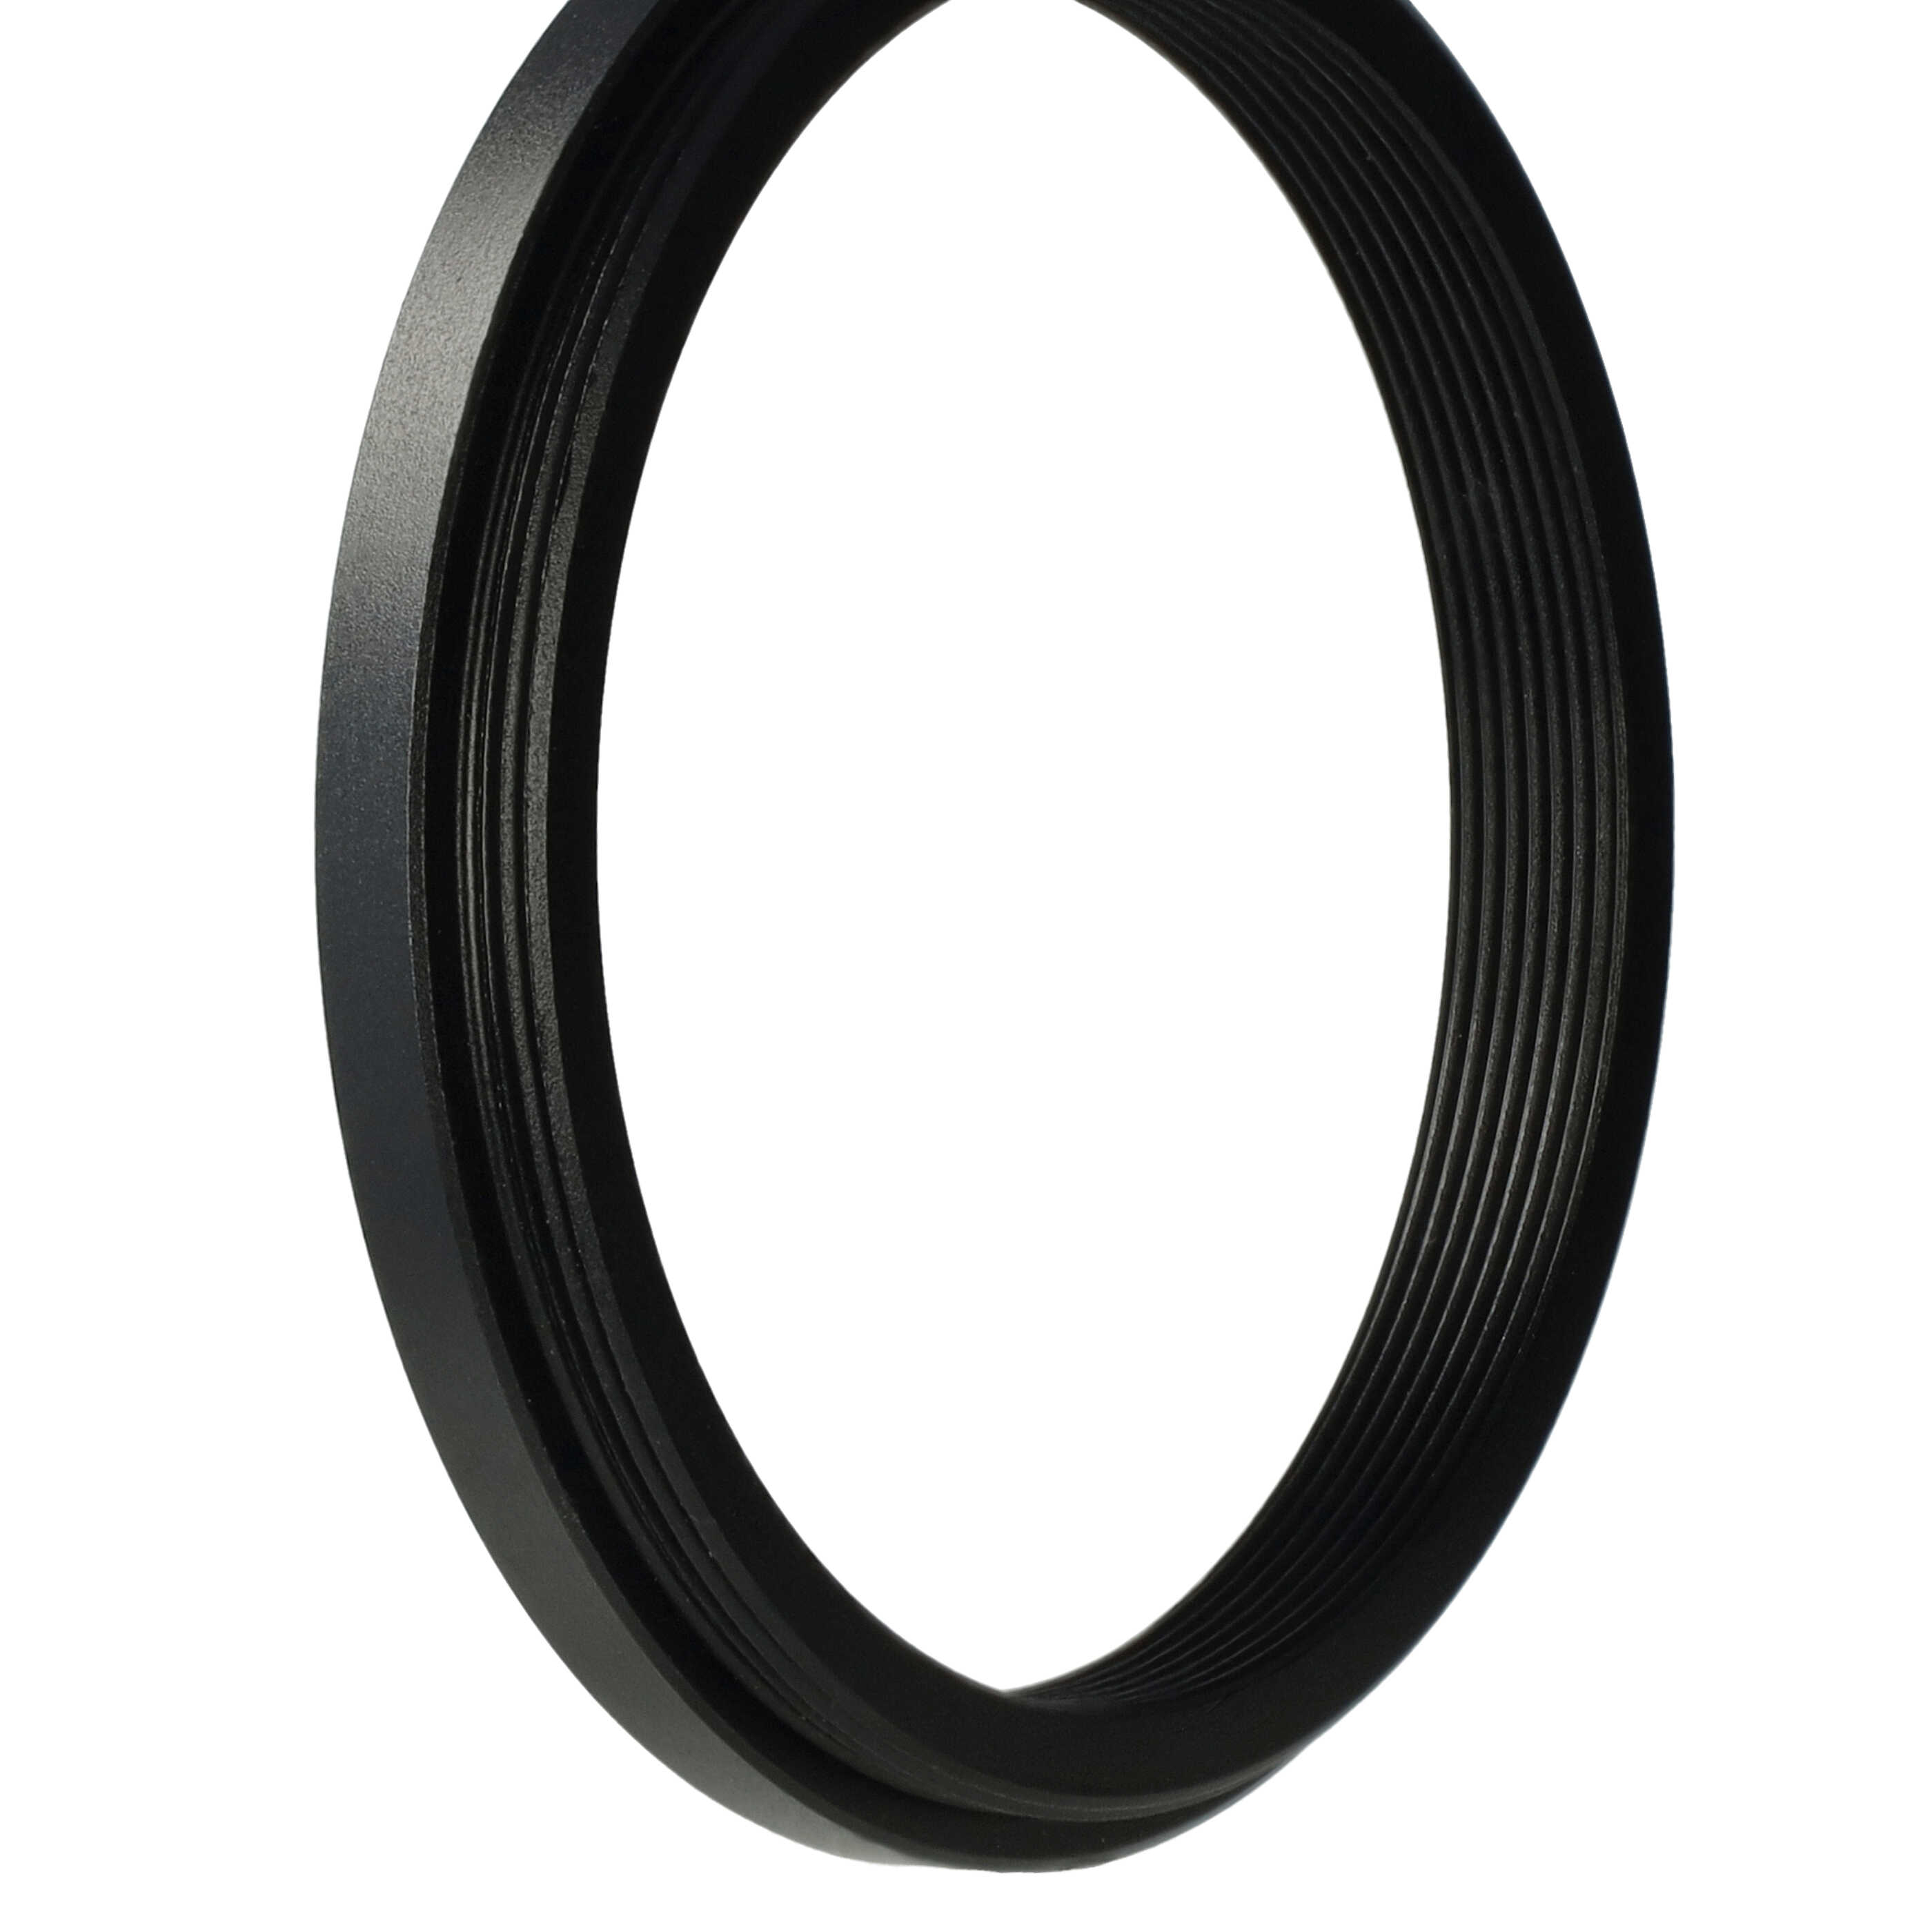 Anillo adaptador Step Down de 52 mm a 46 mm para objetivo de la cámara - Adaptador de filtro, metal, negro